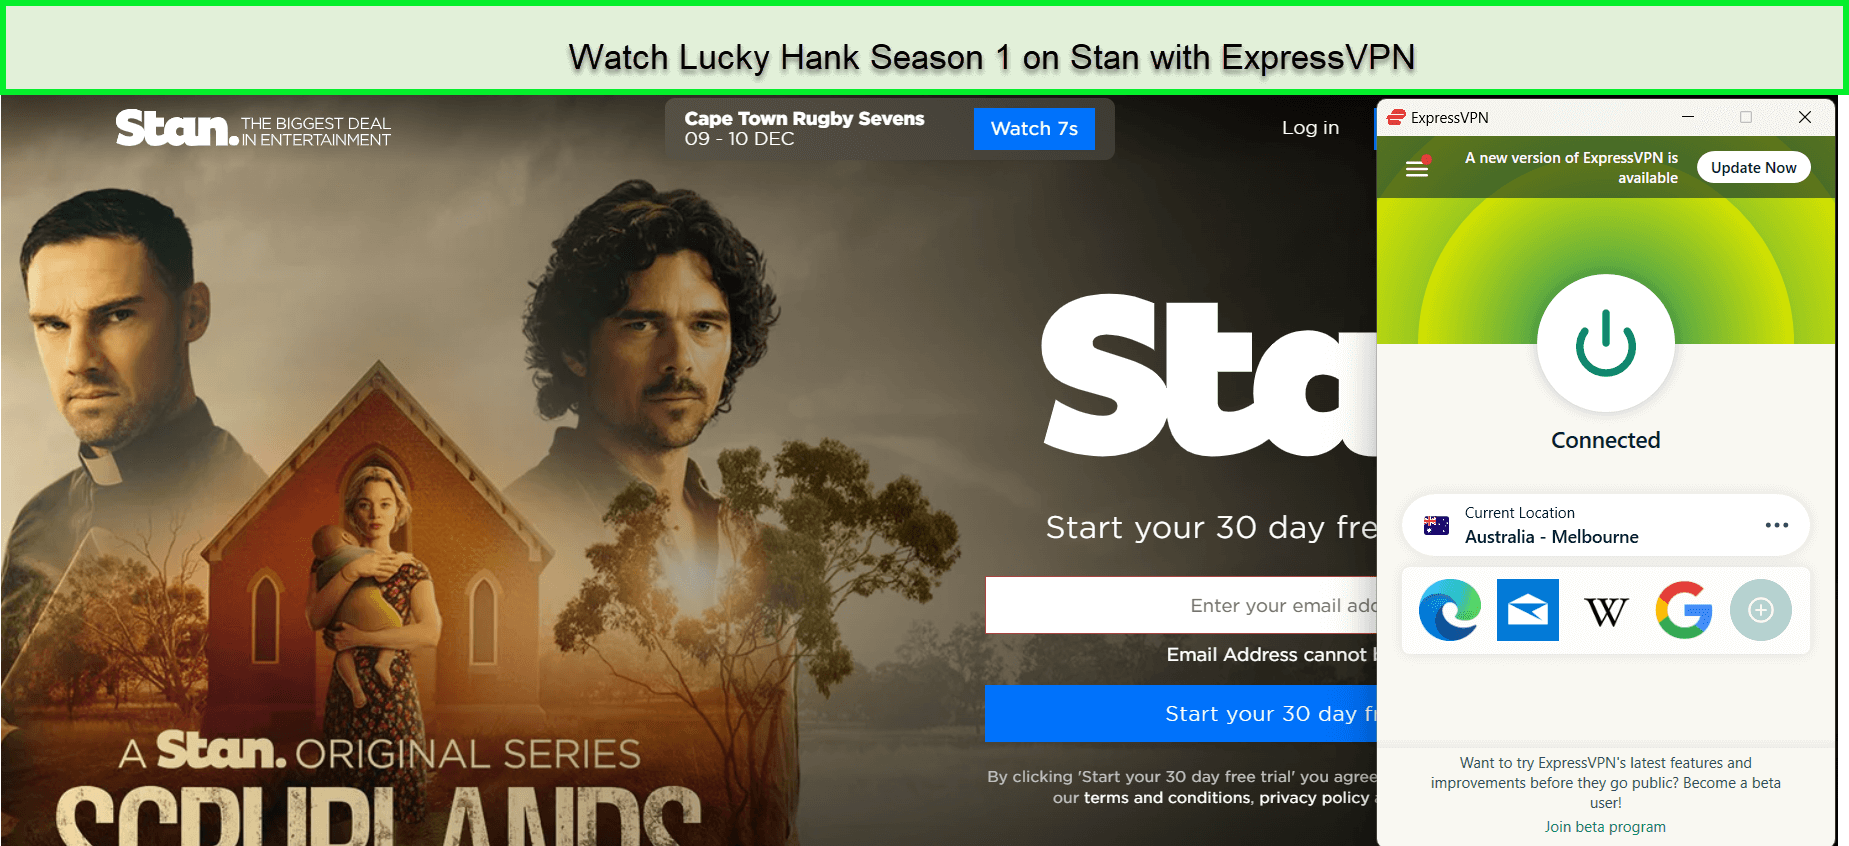 Watch-Lucky-Hank-Season-1-in-UK-on-Stan